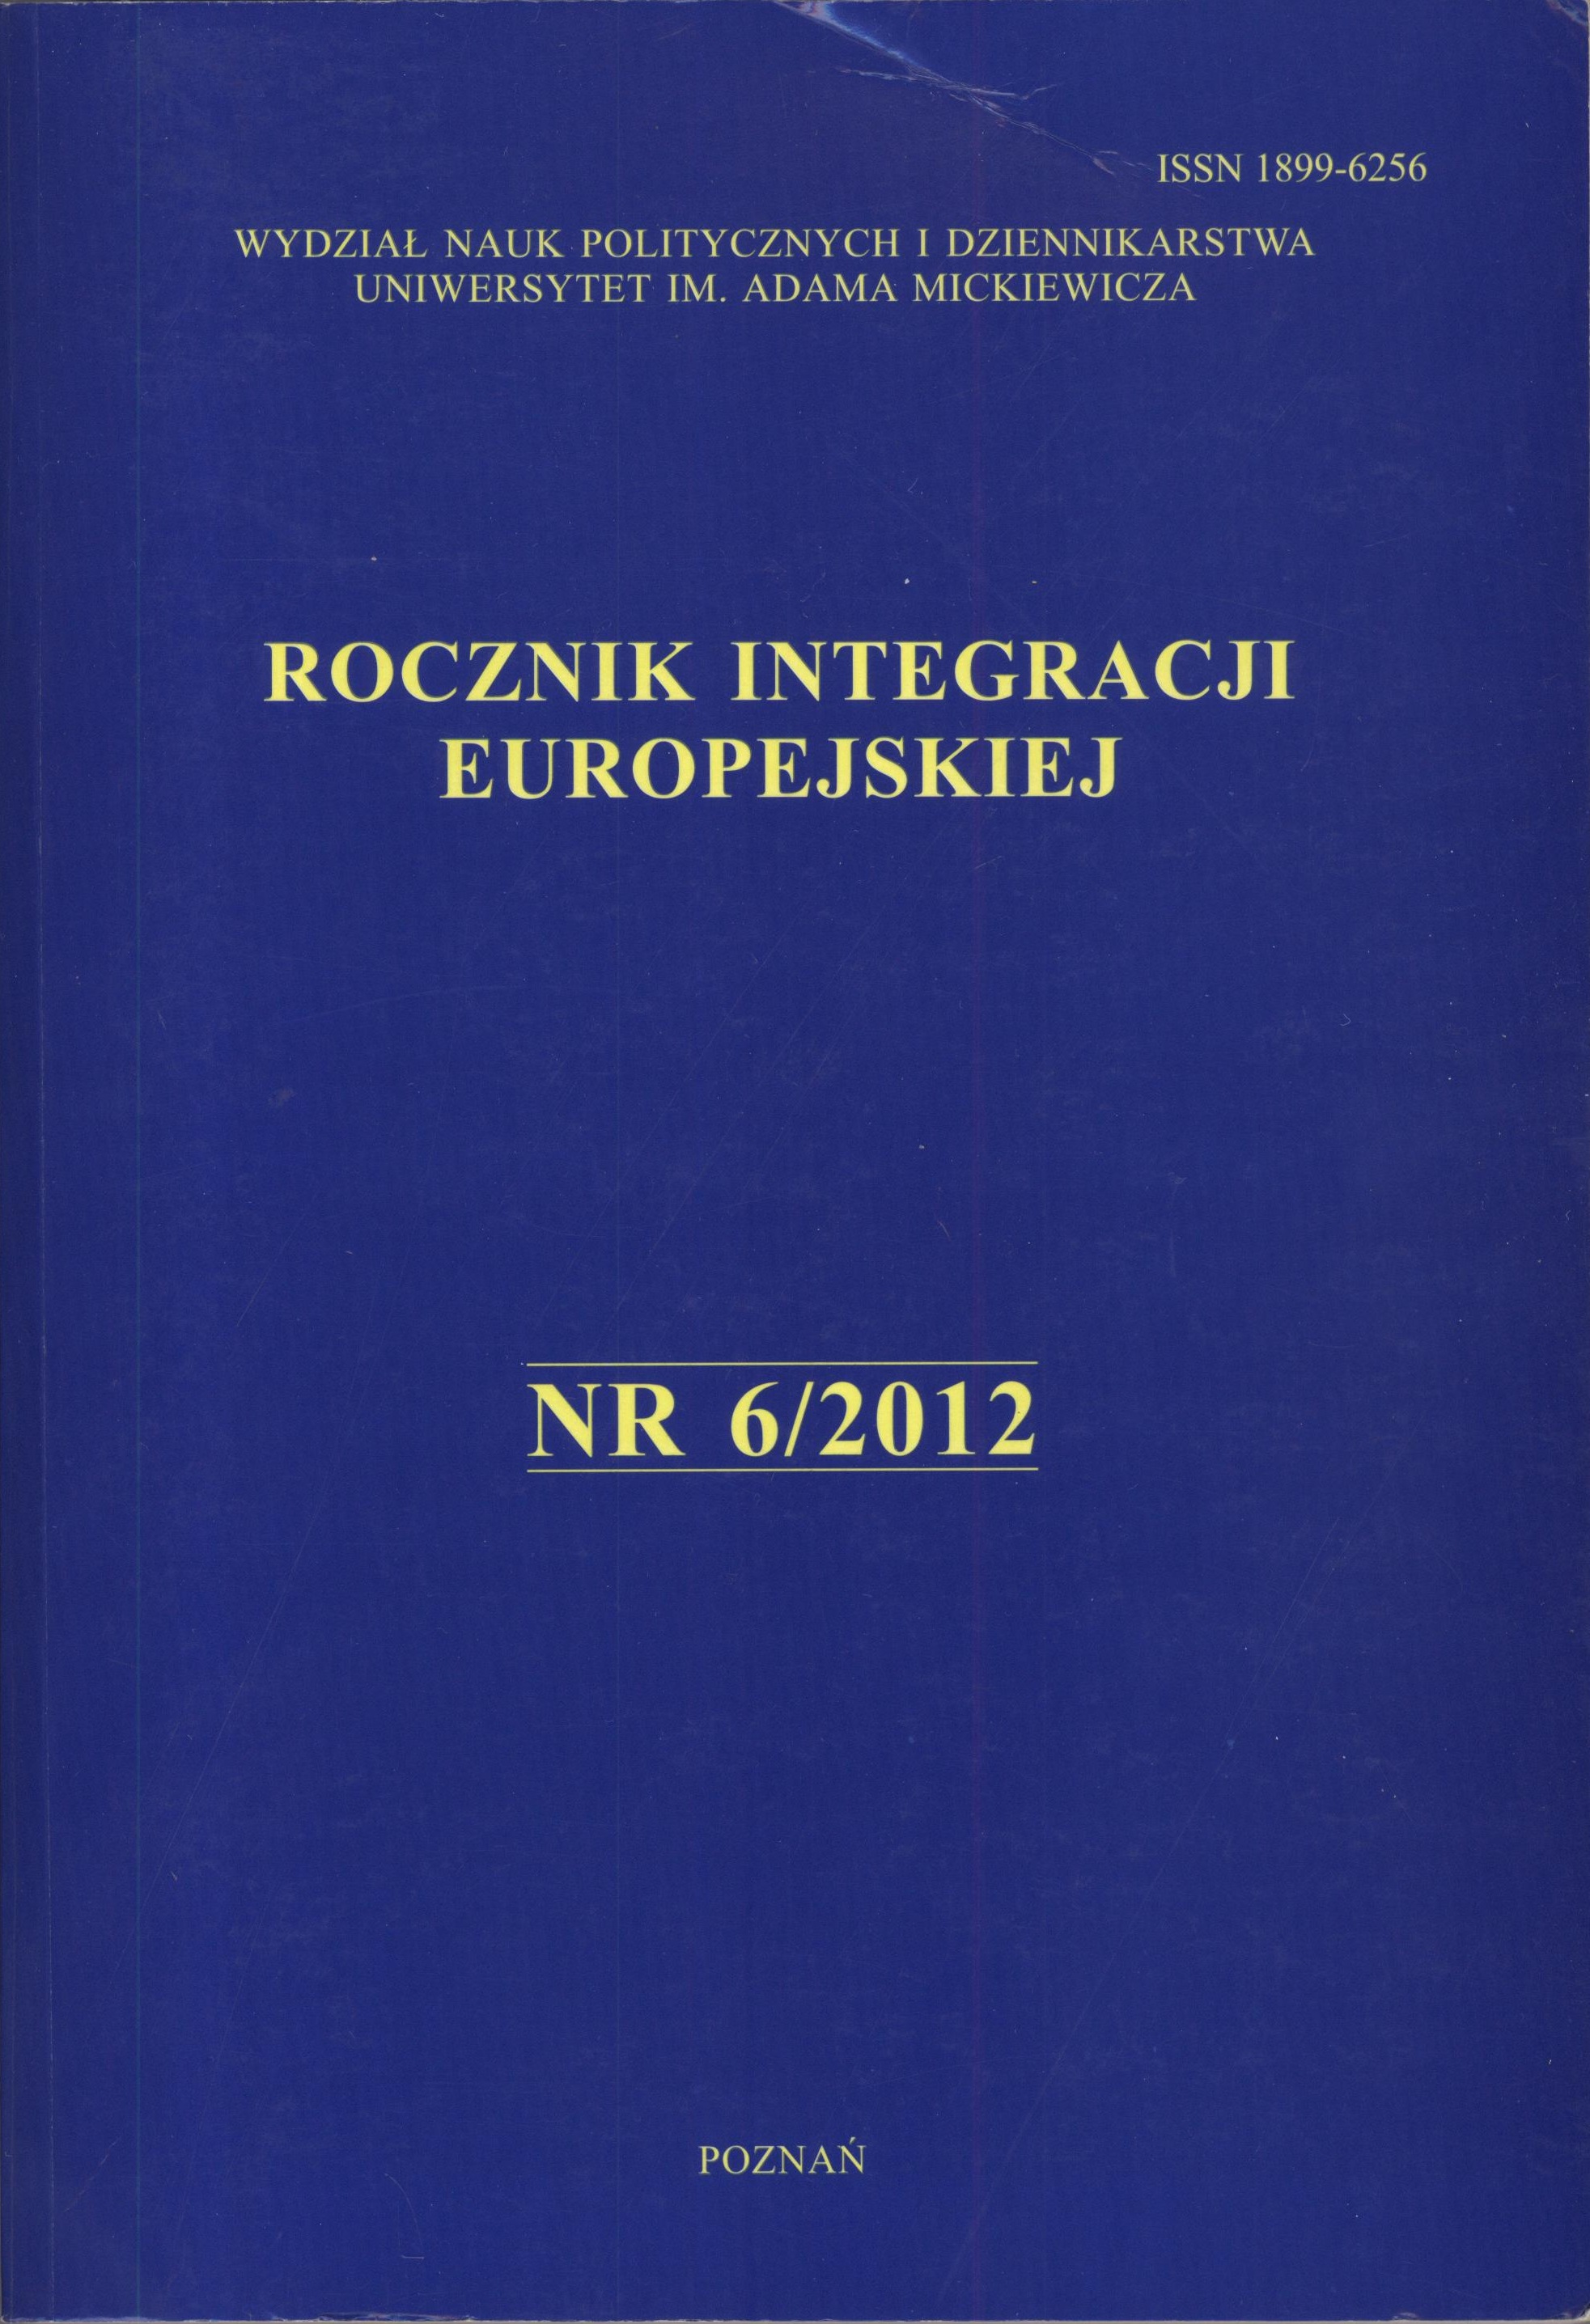 Donat Jerzy Mierzejewski, European security in the context of global change, Wydawnictwo Adam Marszałek, Toruń 2011, ss. 262. Cover Image